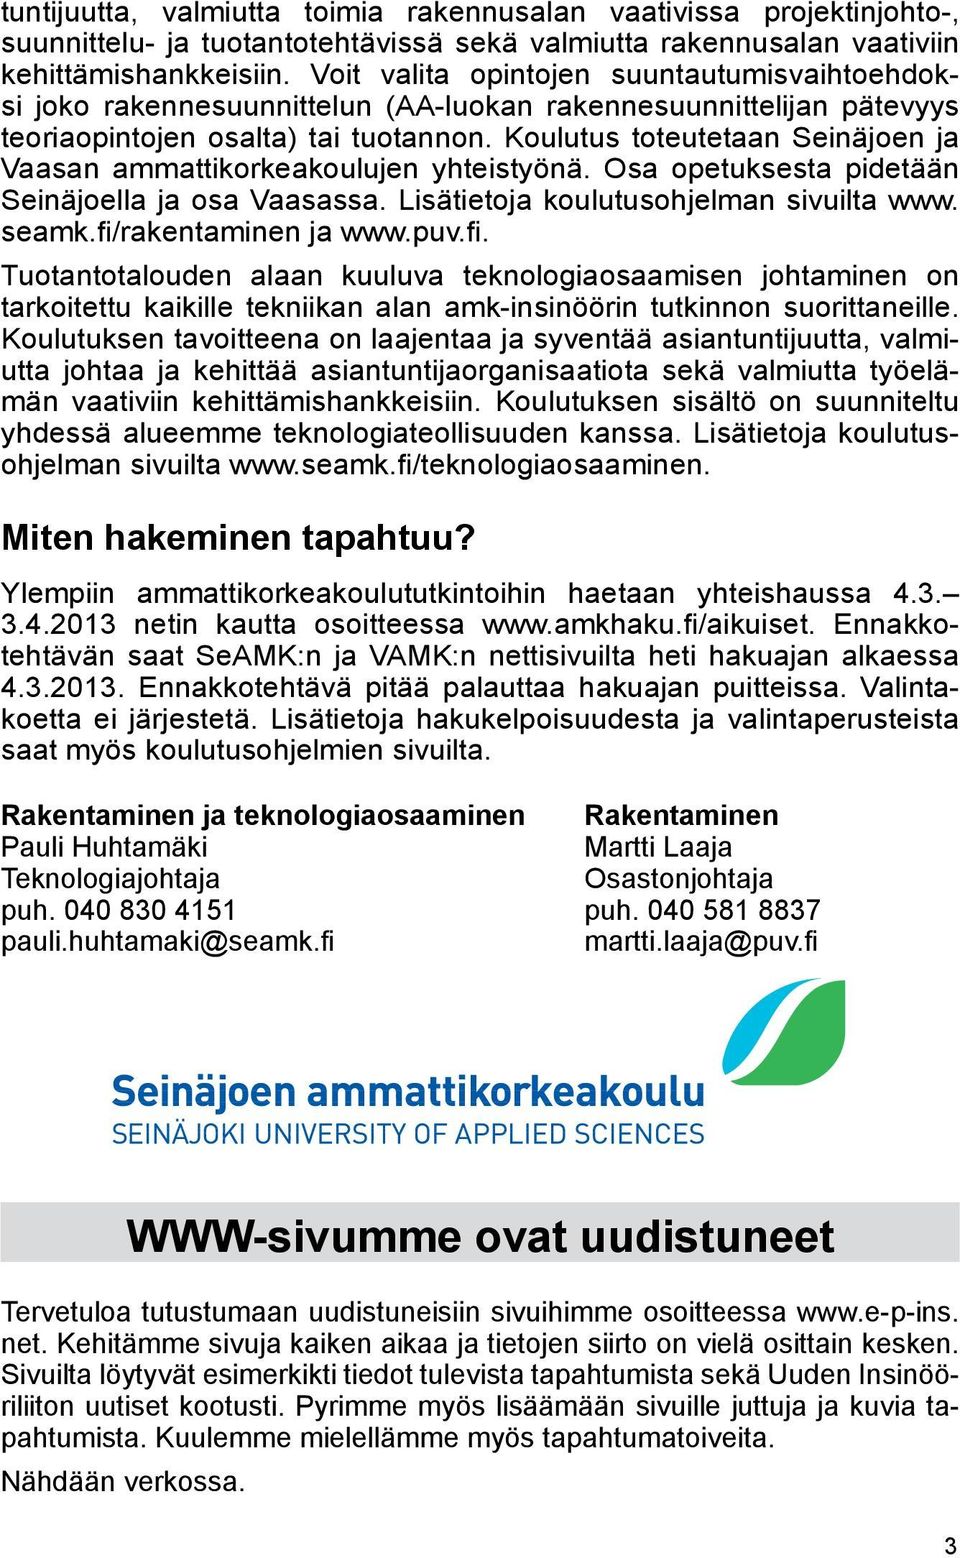 Koulutus toteutetaan Seinäjoen ja Vaasan ammattikorkeakoulujen yhteistyönä. Osa opetuksesta pidetään Seinäjoella ja osa Vaasassa. Lisätietoja koulutusohjelman sivuilta www. seamk.